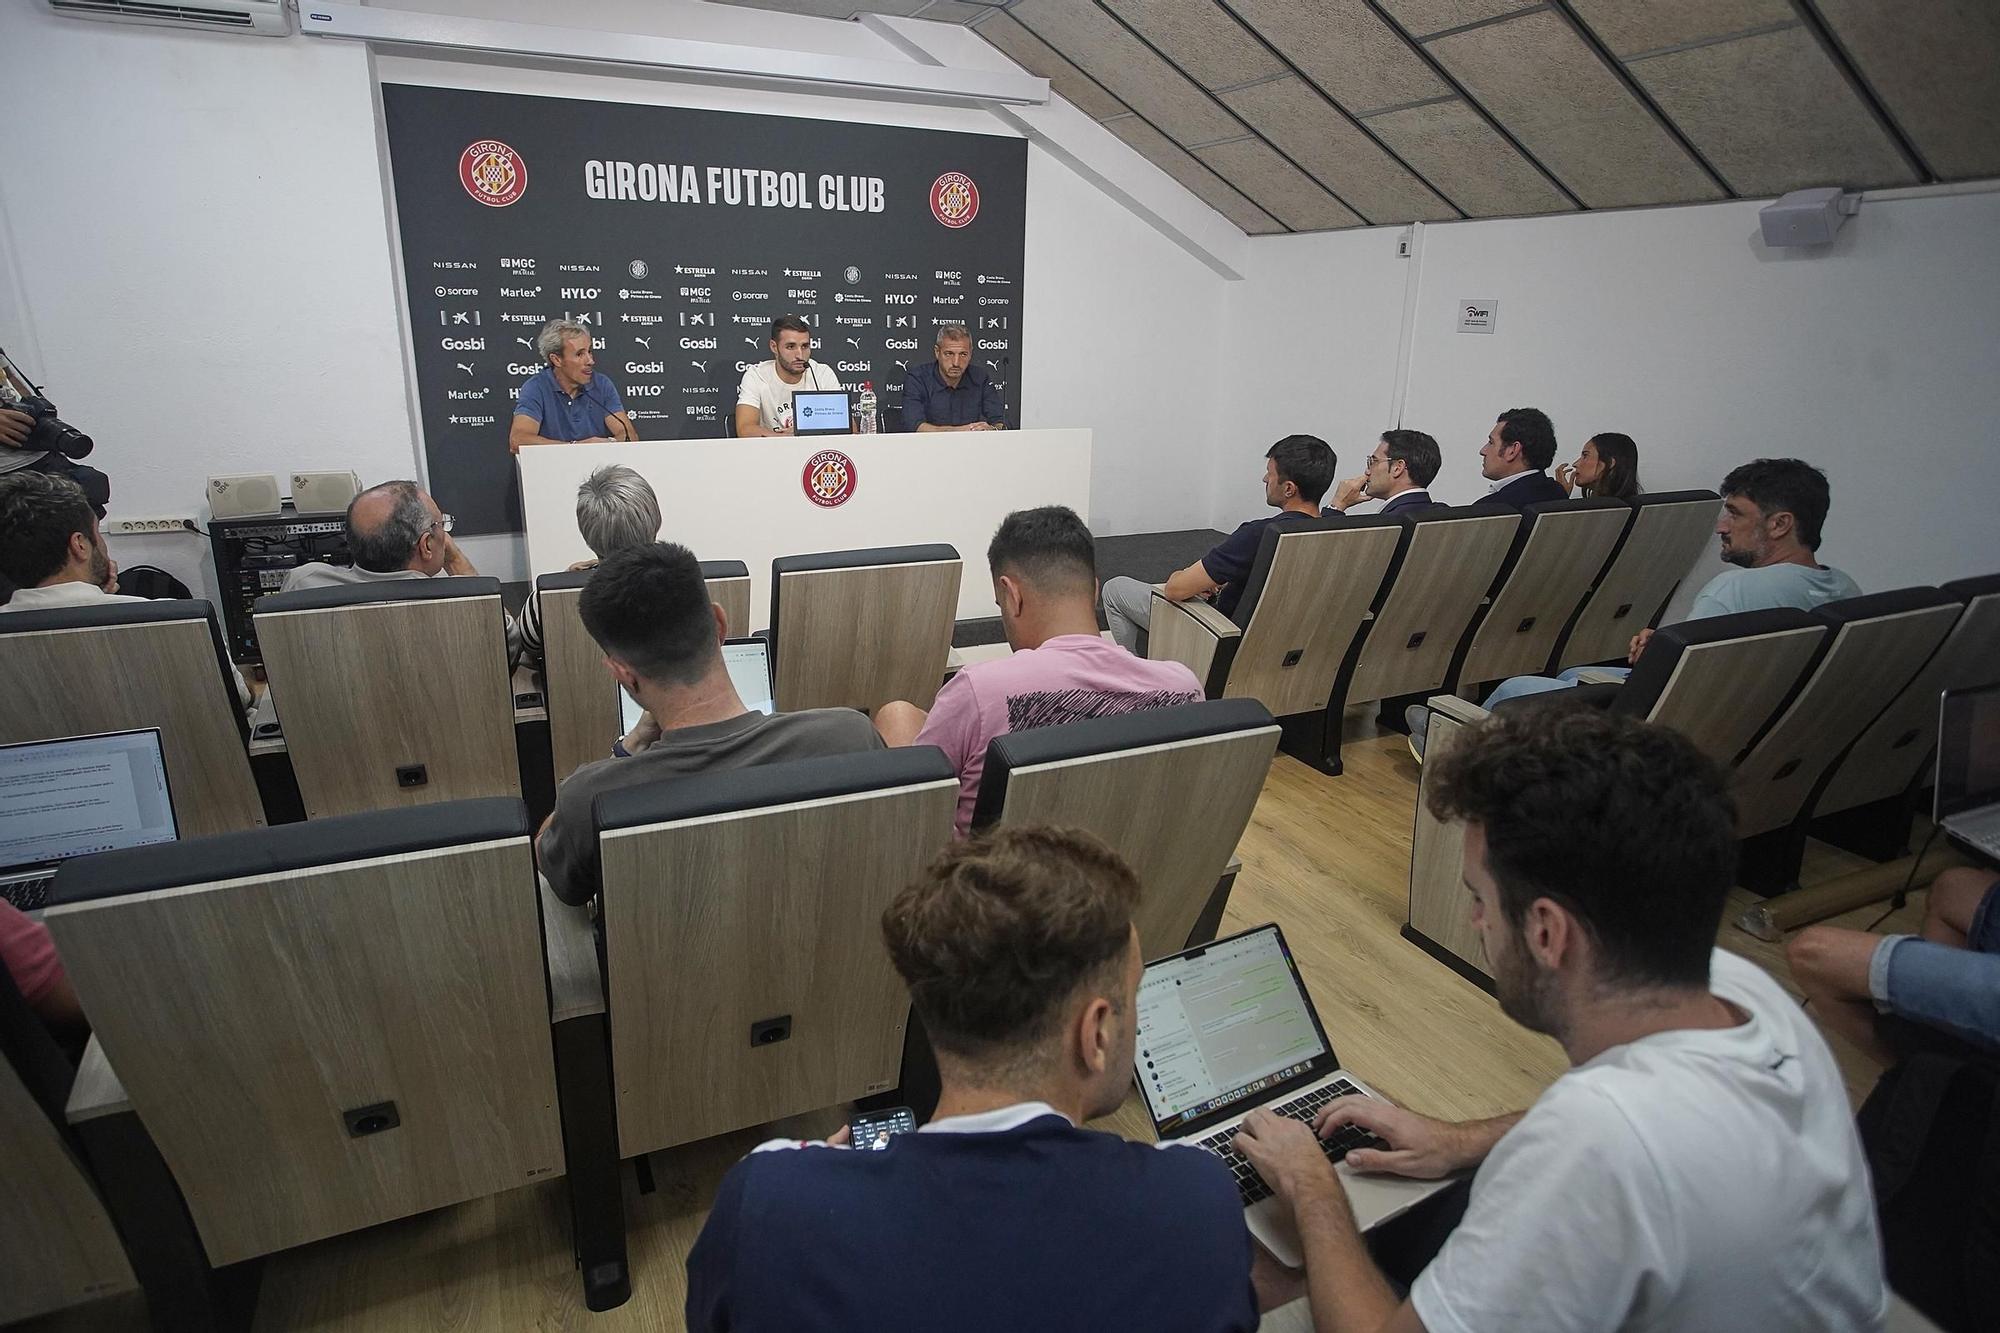 Les imatges de la presentació d'Abel Ruiz, nou fitxatge del Girona FC